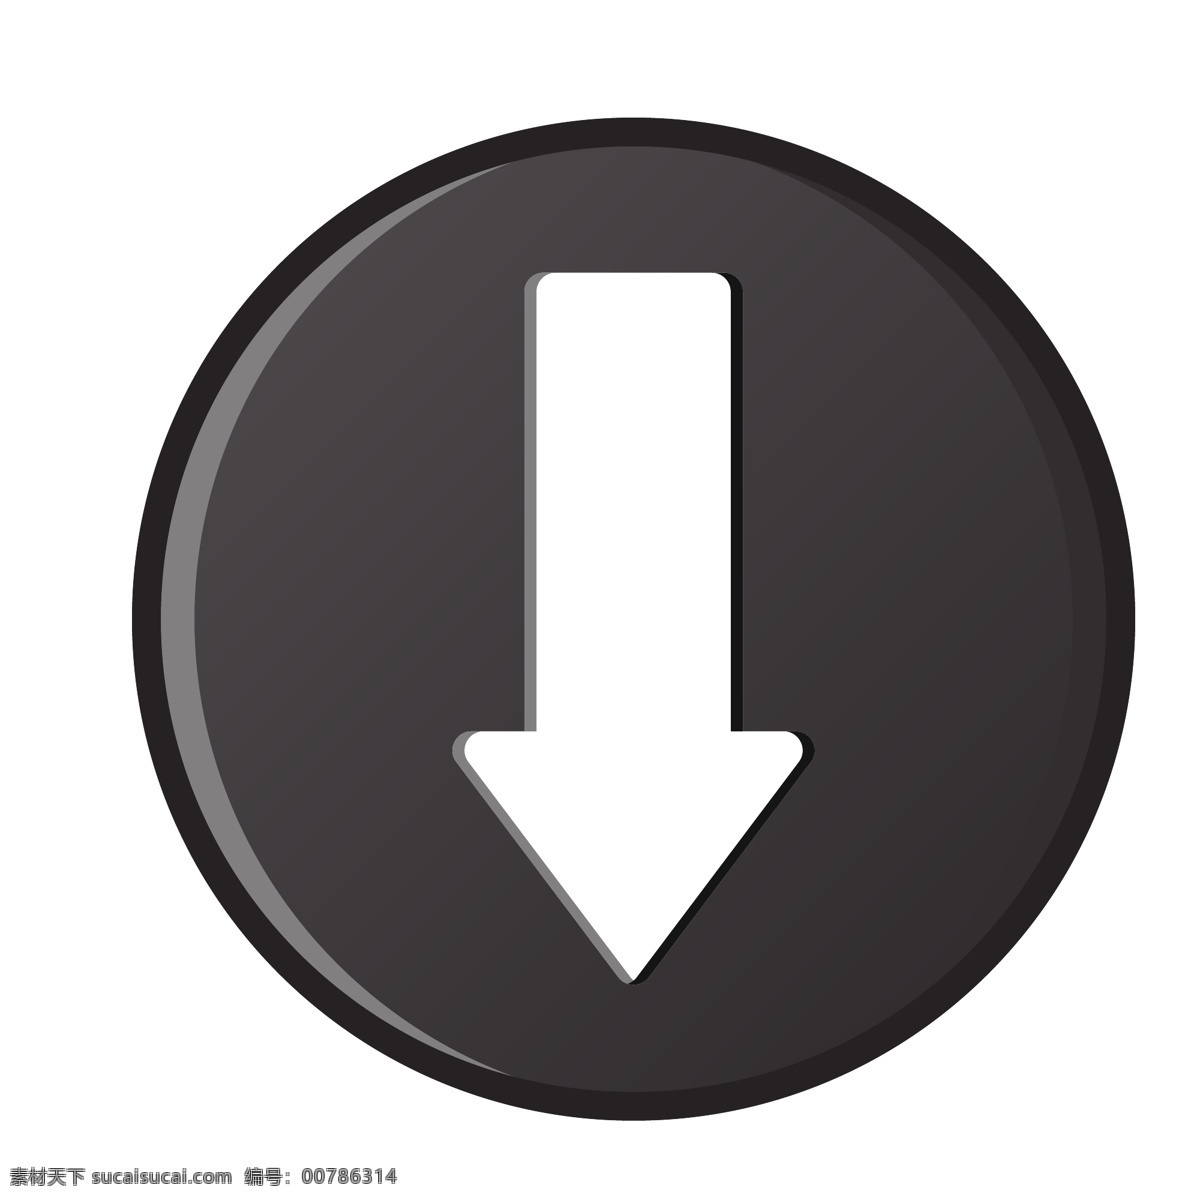 向下 黑色 箭头 图标 矢量 路标 导向标 黑色箭头 指示箭头 导向牌 指示牌 指示标 引导